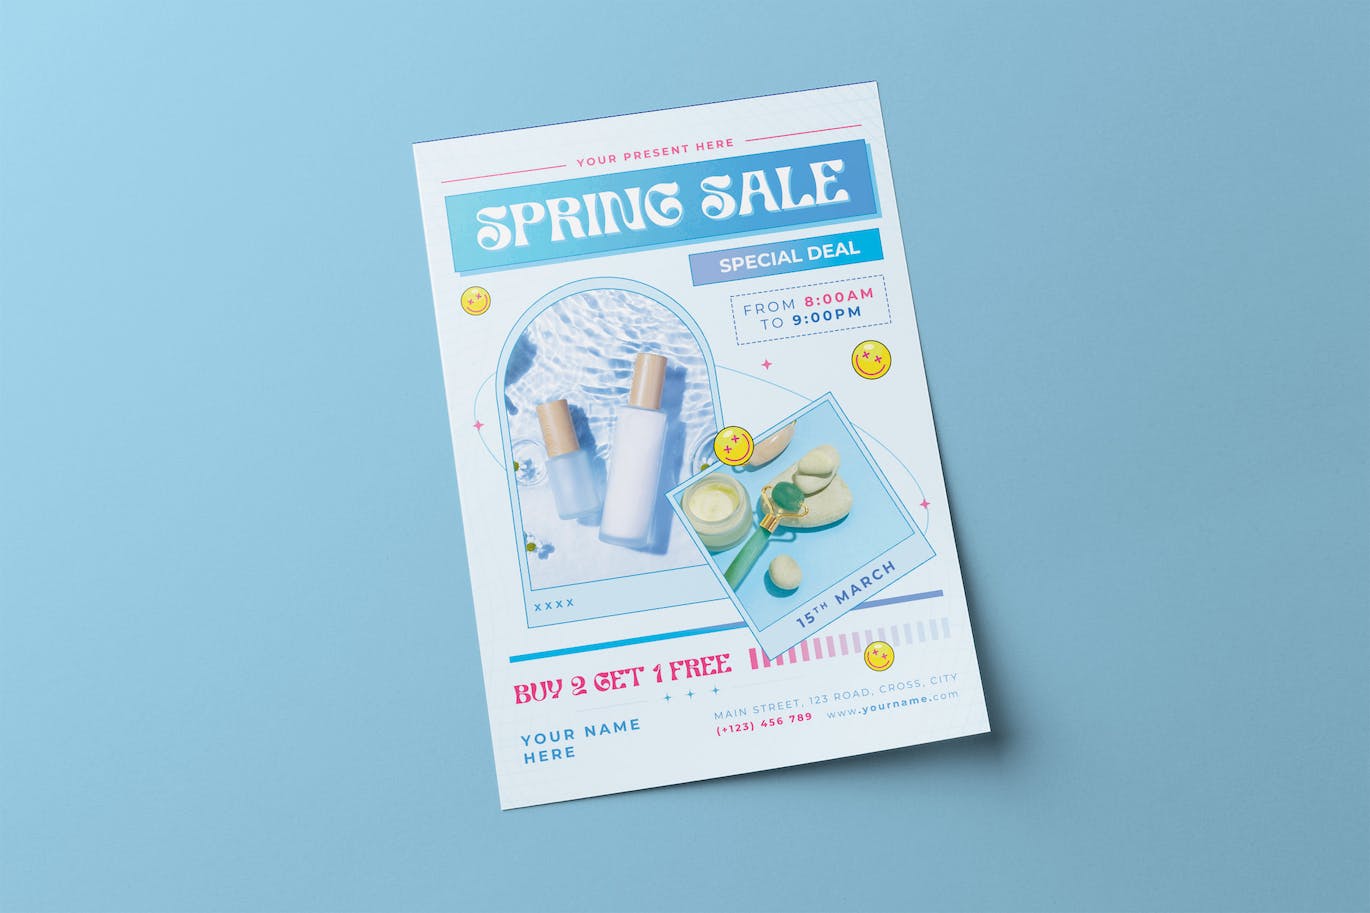 春季护肤品销售海报设计 Spring Sale Flyer 设计素材 第1张